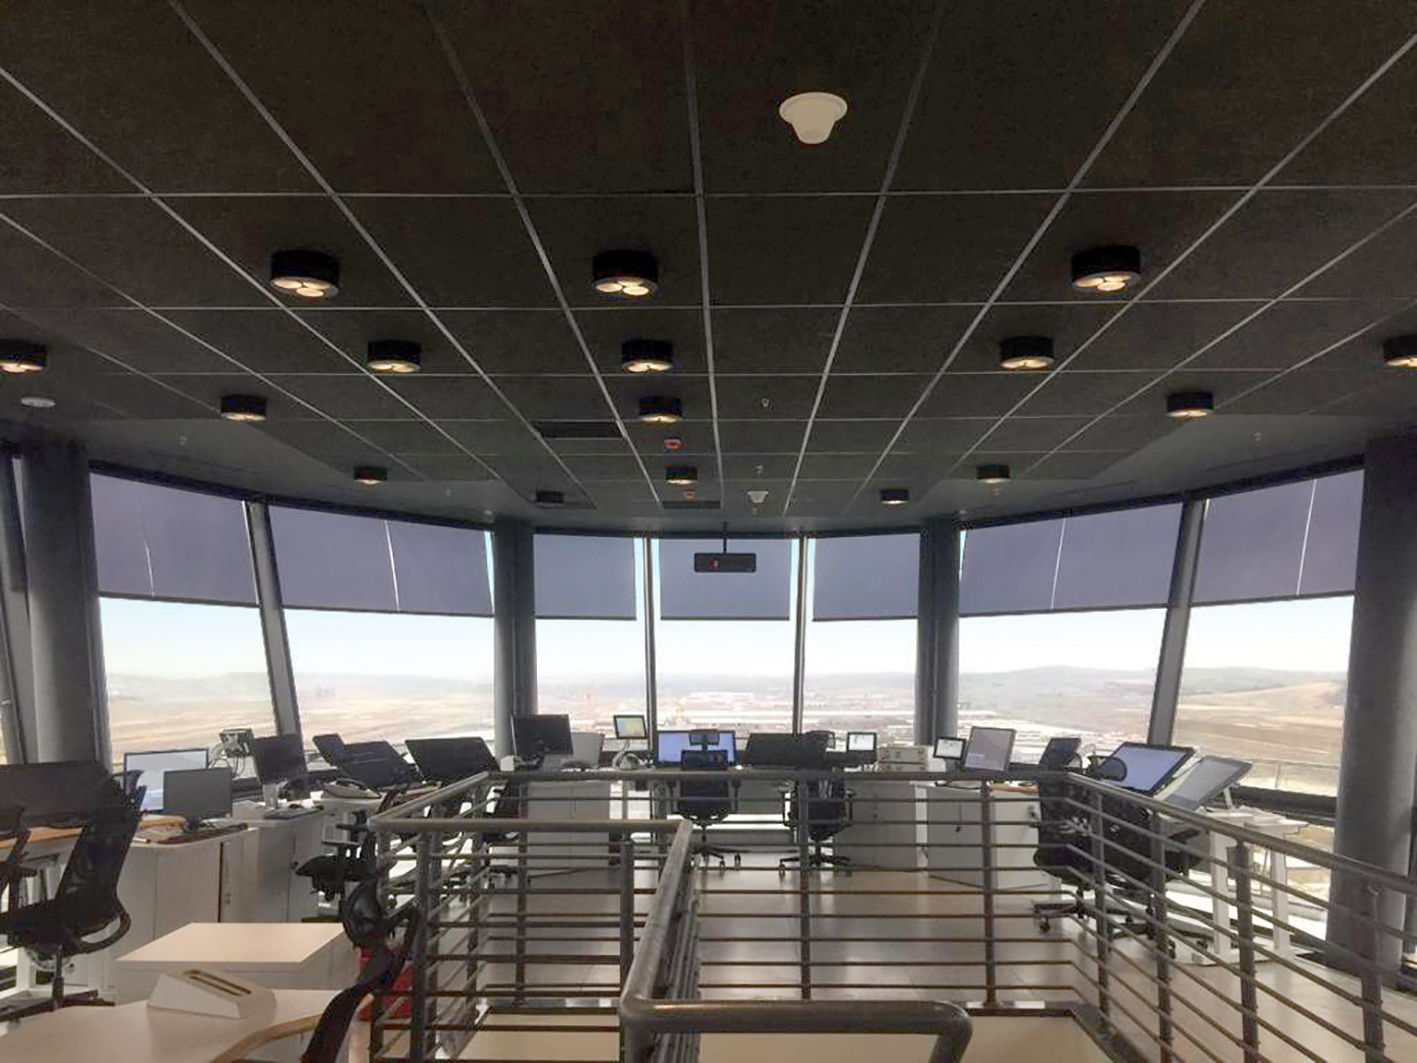 A Nice est presente na automatizao dos dispositivos de controlo solar na torre de controlo do novo aeroporto de Istambul...